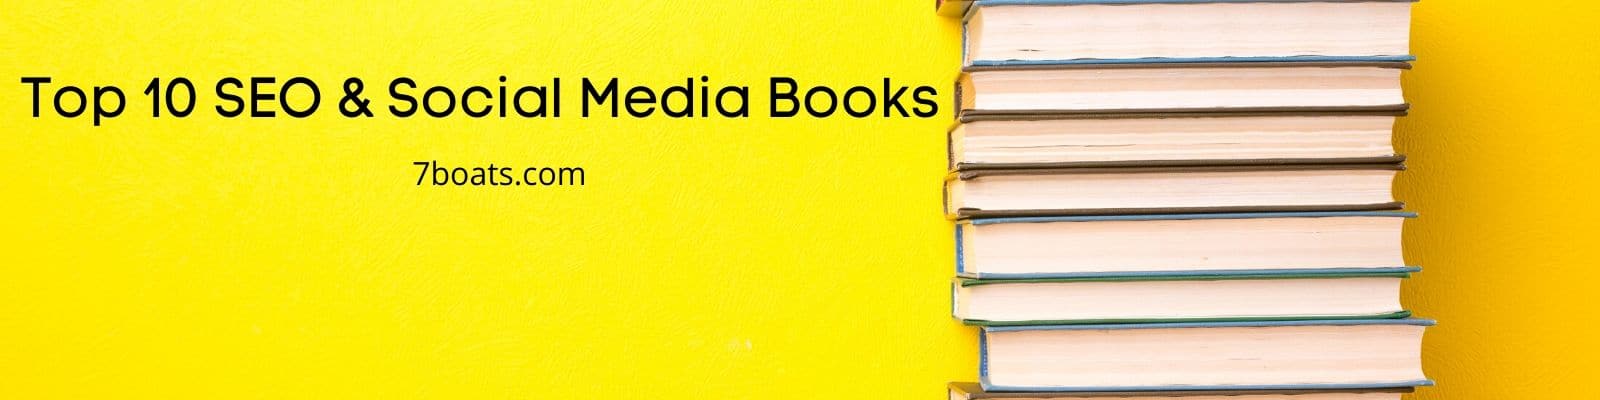 Best SEO Books & Social Media Books